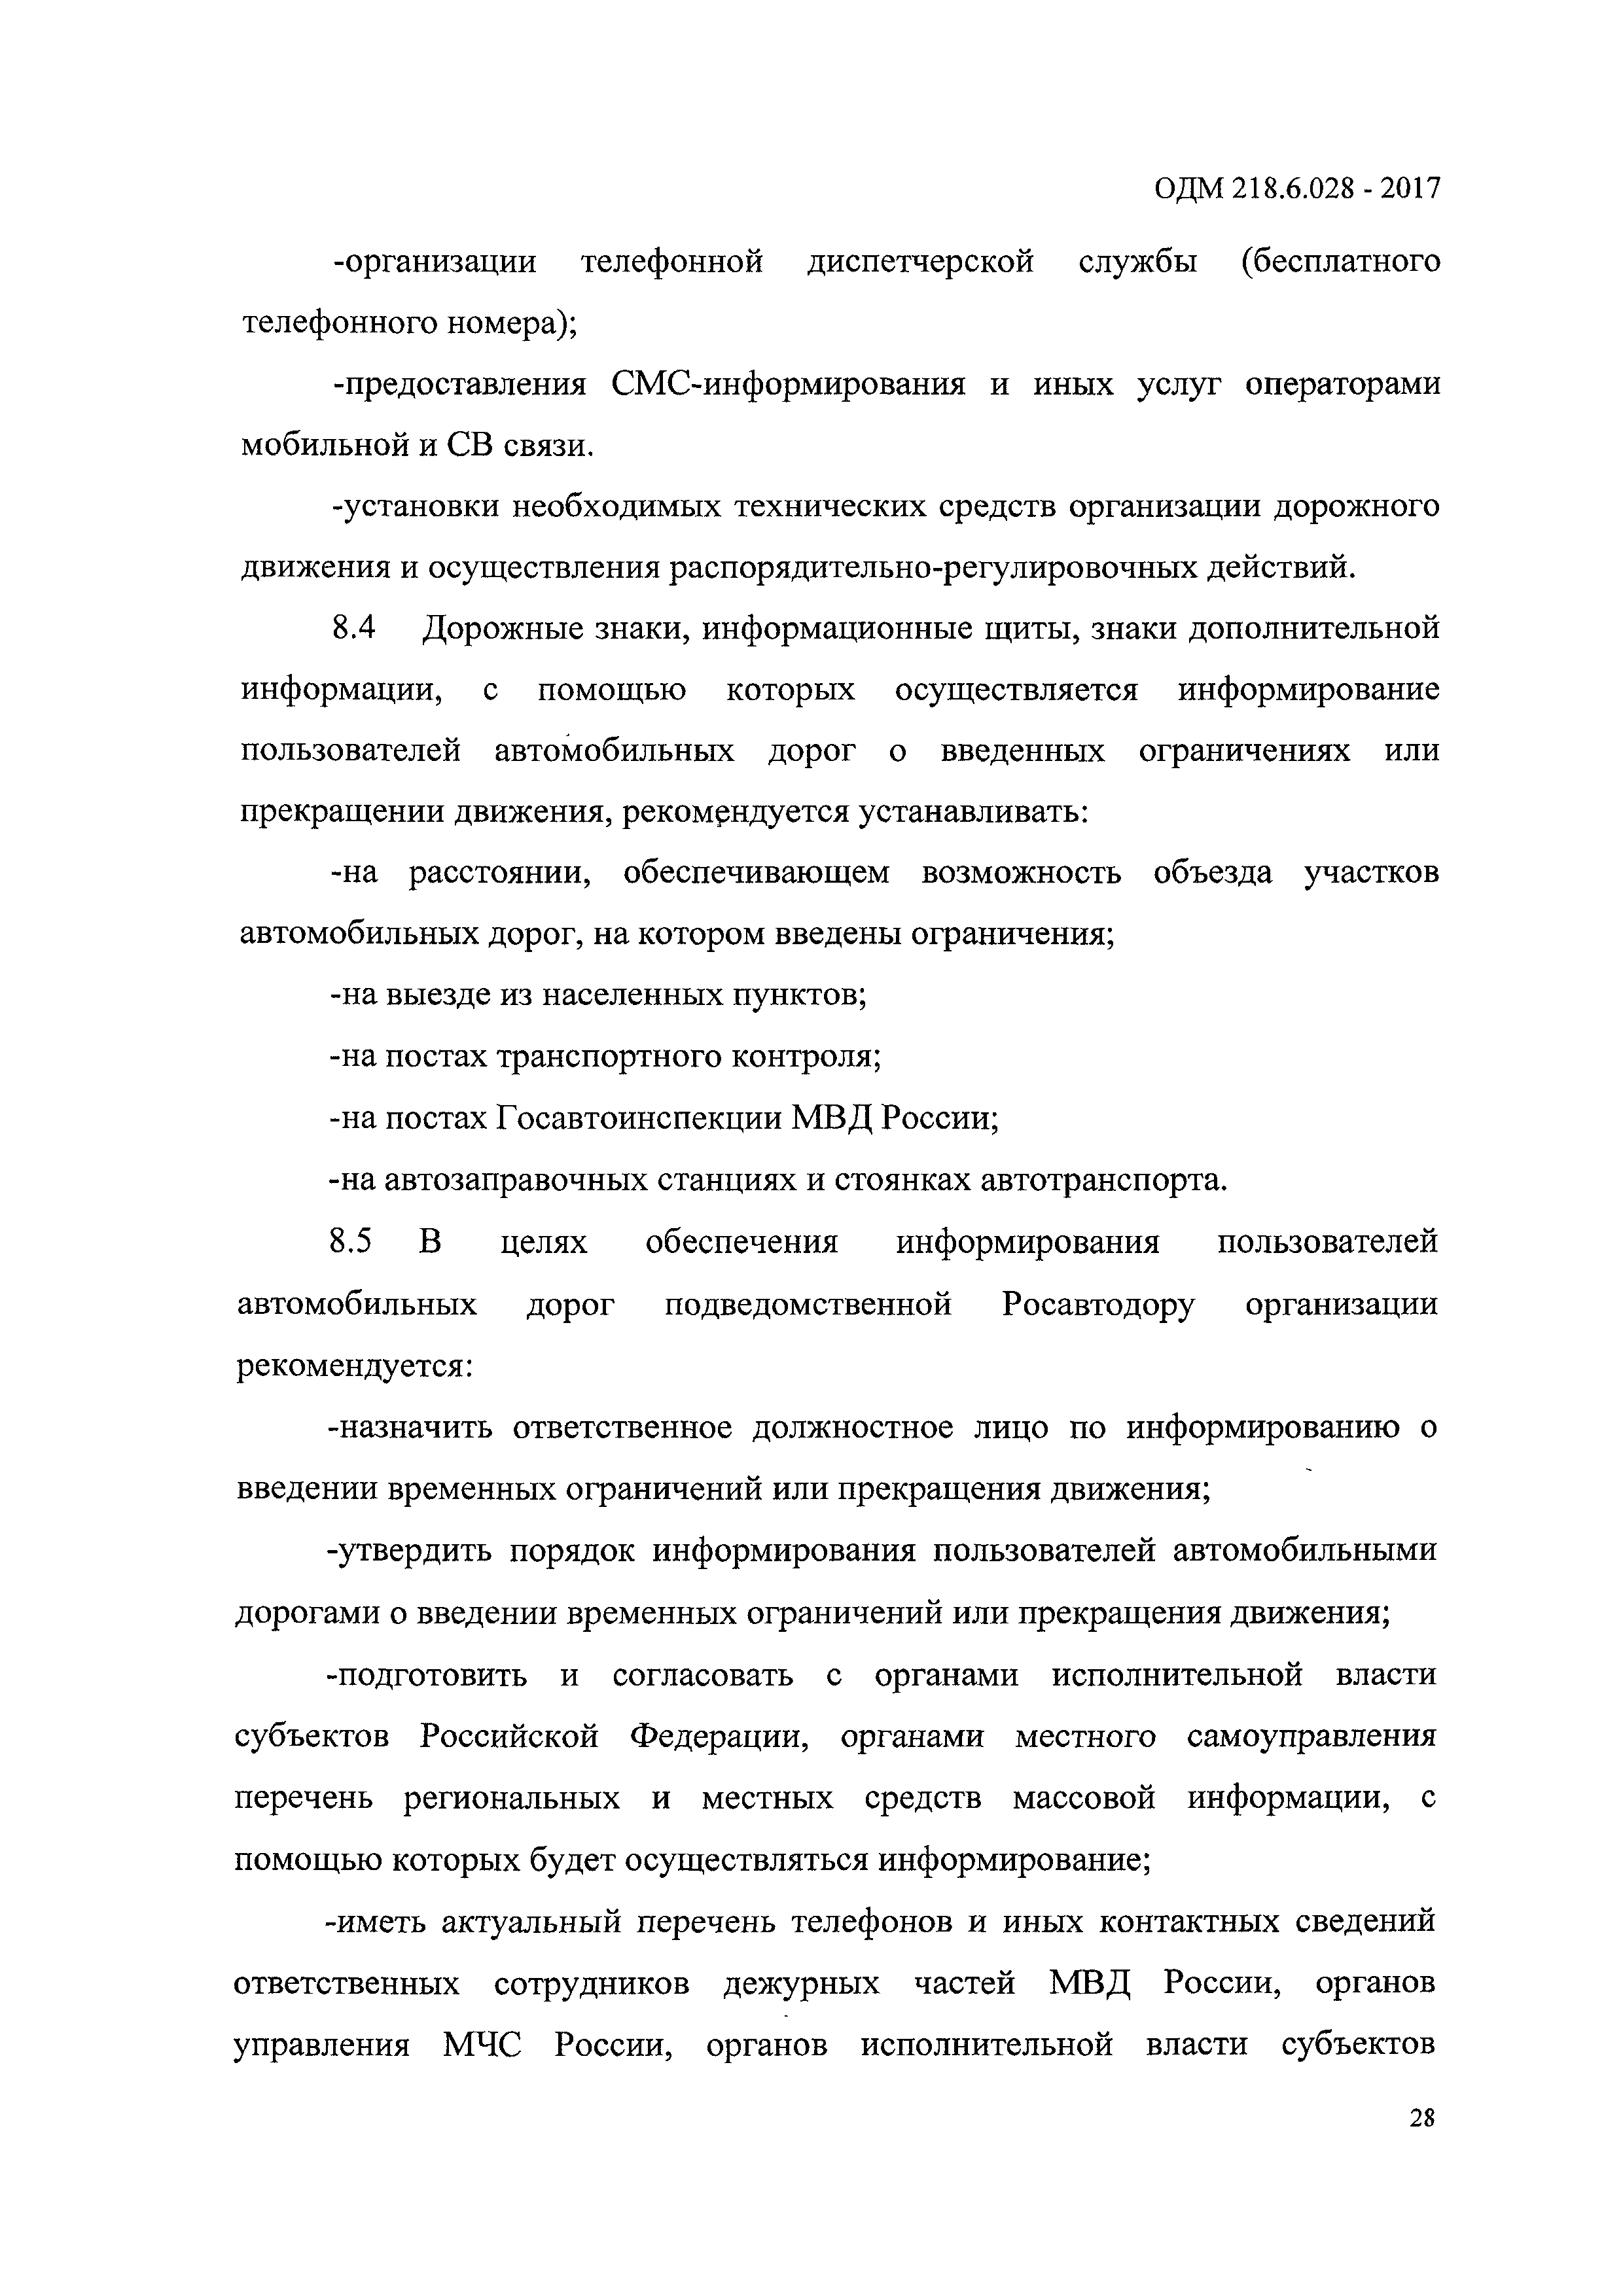 ОДМ 218.6.028-2017